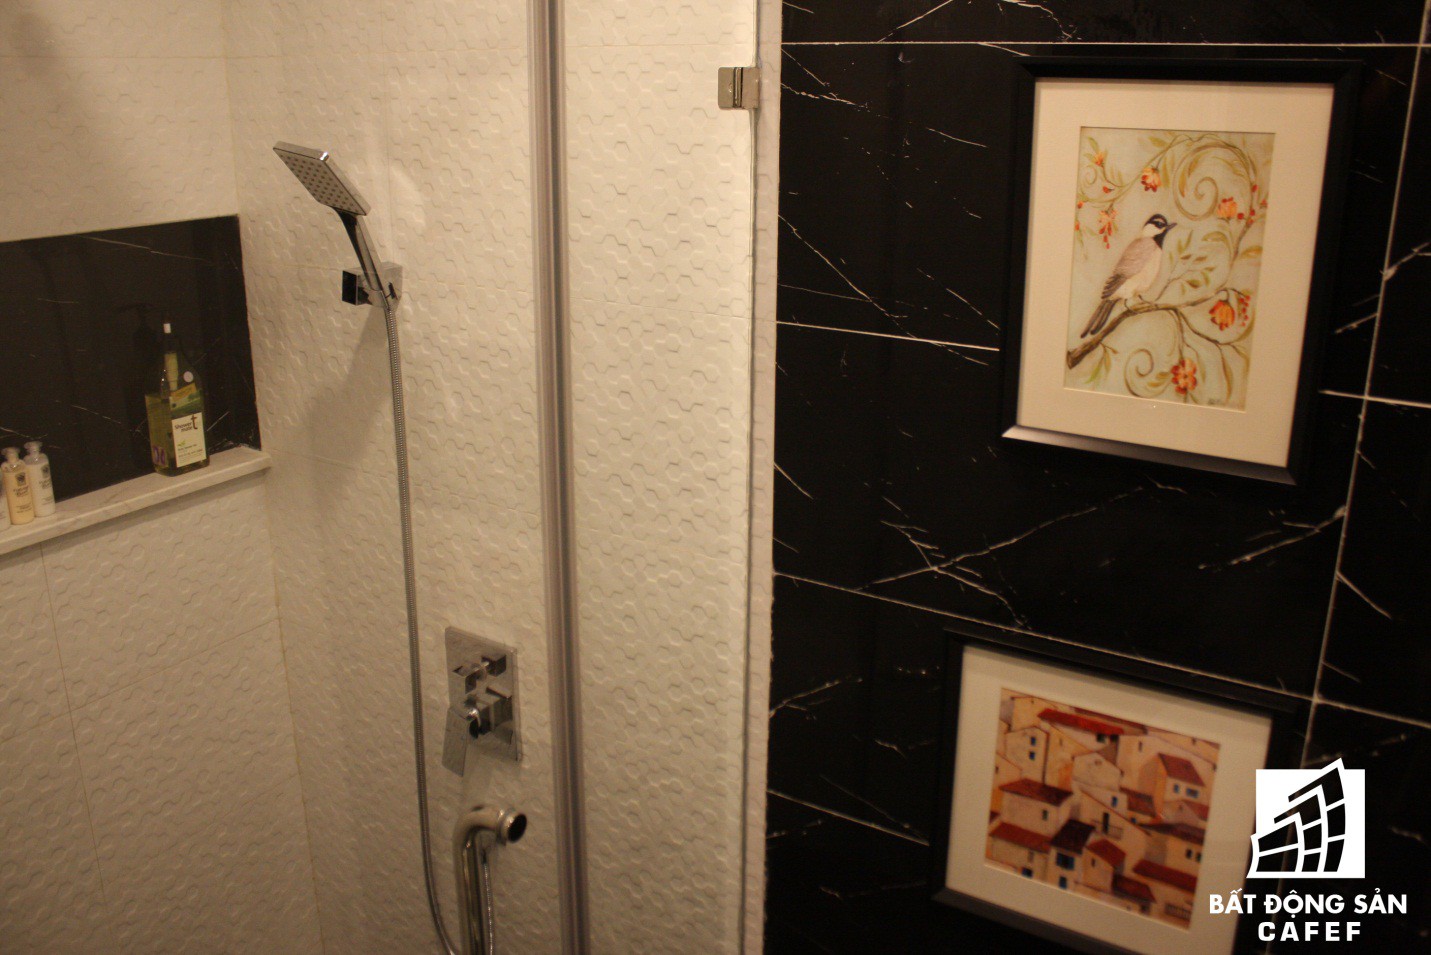  Phòng tắm được trang bị vòi tắm hoa sen hiện đại và thuận tiện với kệ để đồ ngay cạnh. Cửa vào phòng tắm còn được trang trí bắt mắt bằng những bức tranh tuyệt đẹp. 